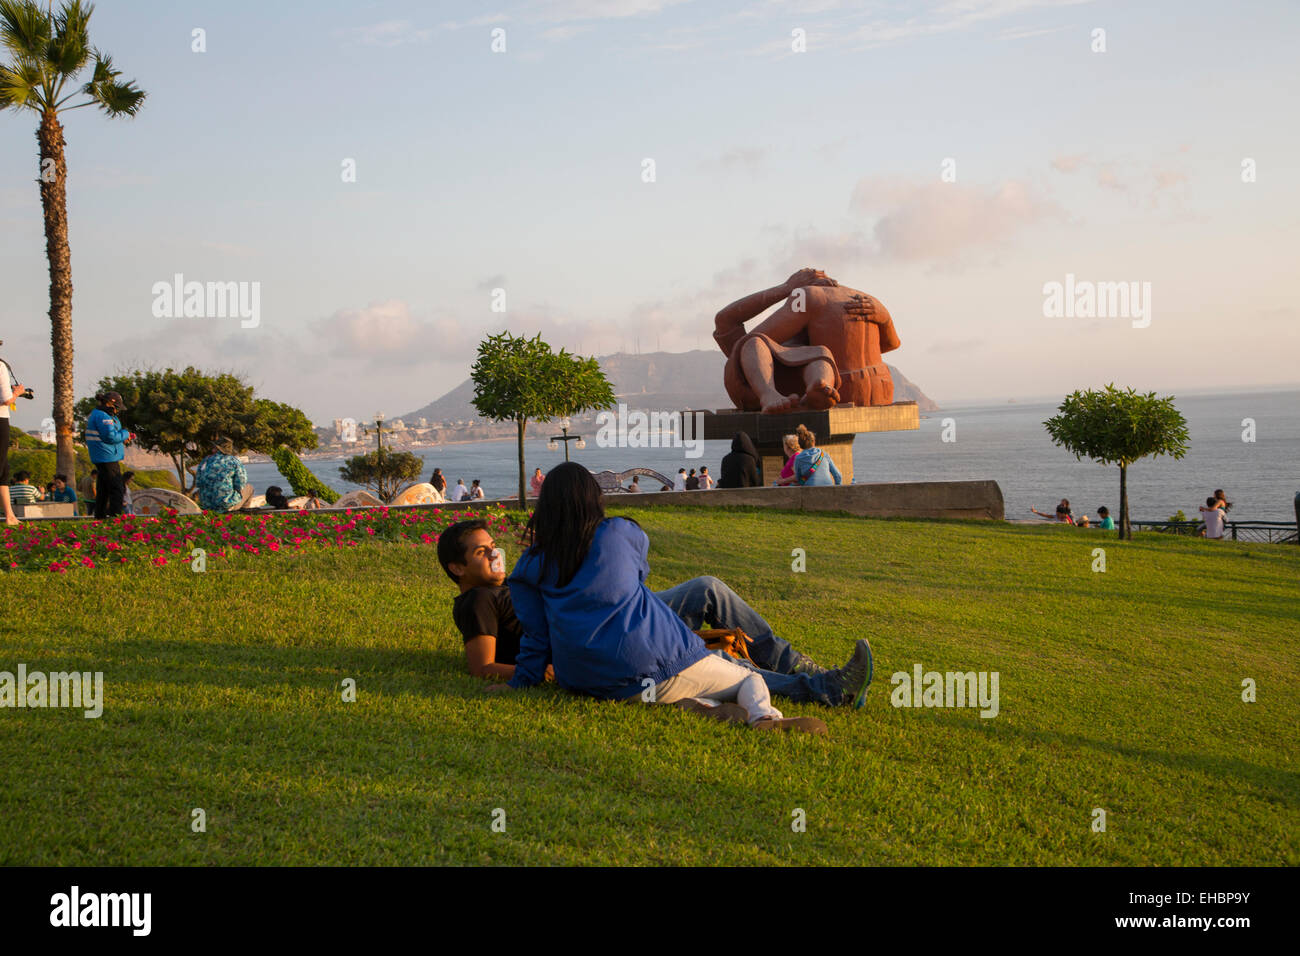 El Parque del Amor, Lovers Park, Miraflores, Lima, Peru Stock Photo